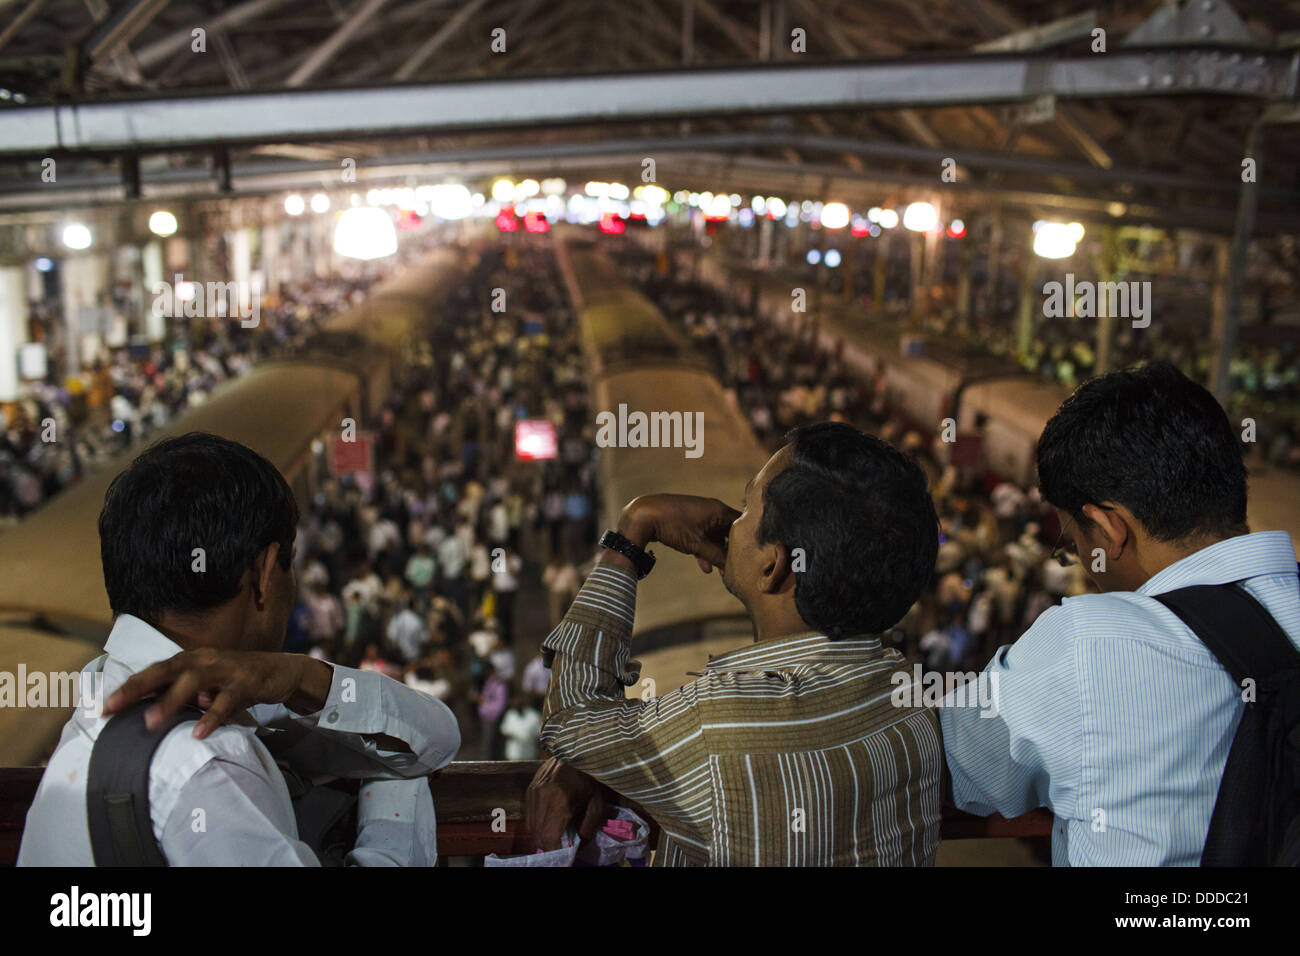 Passagiere und Züge im überfüllten Chhatrapati Shivaji Terminus (Victoria Terminus) Bahnhof in Mumbai, Indien. Stockfoto